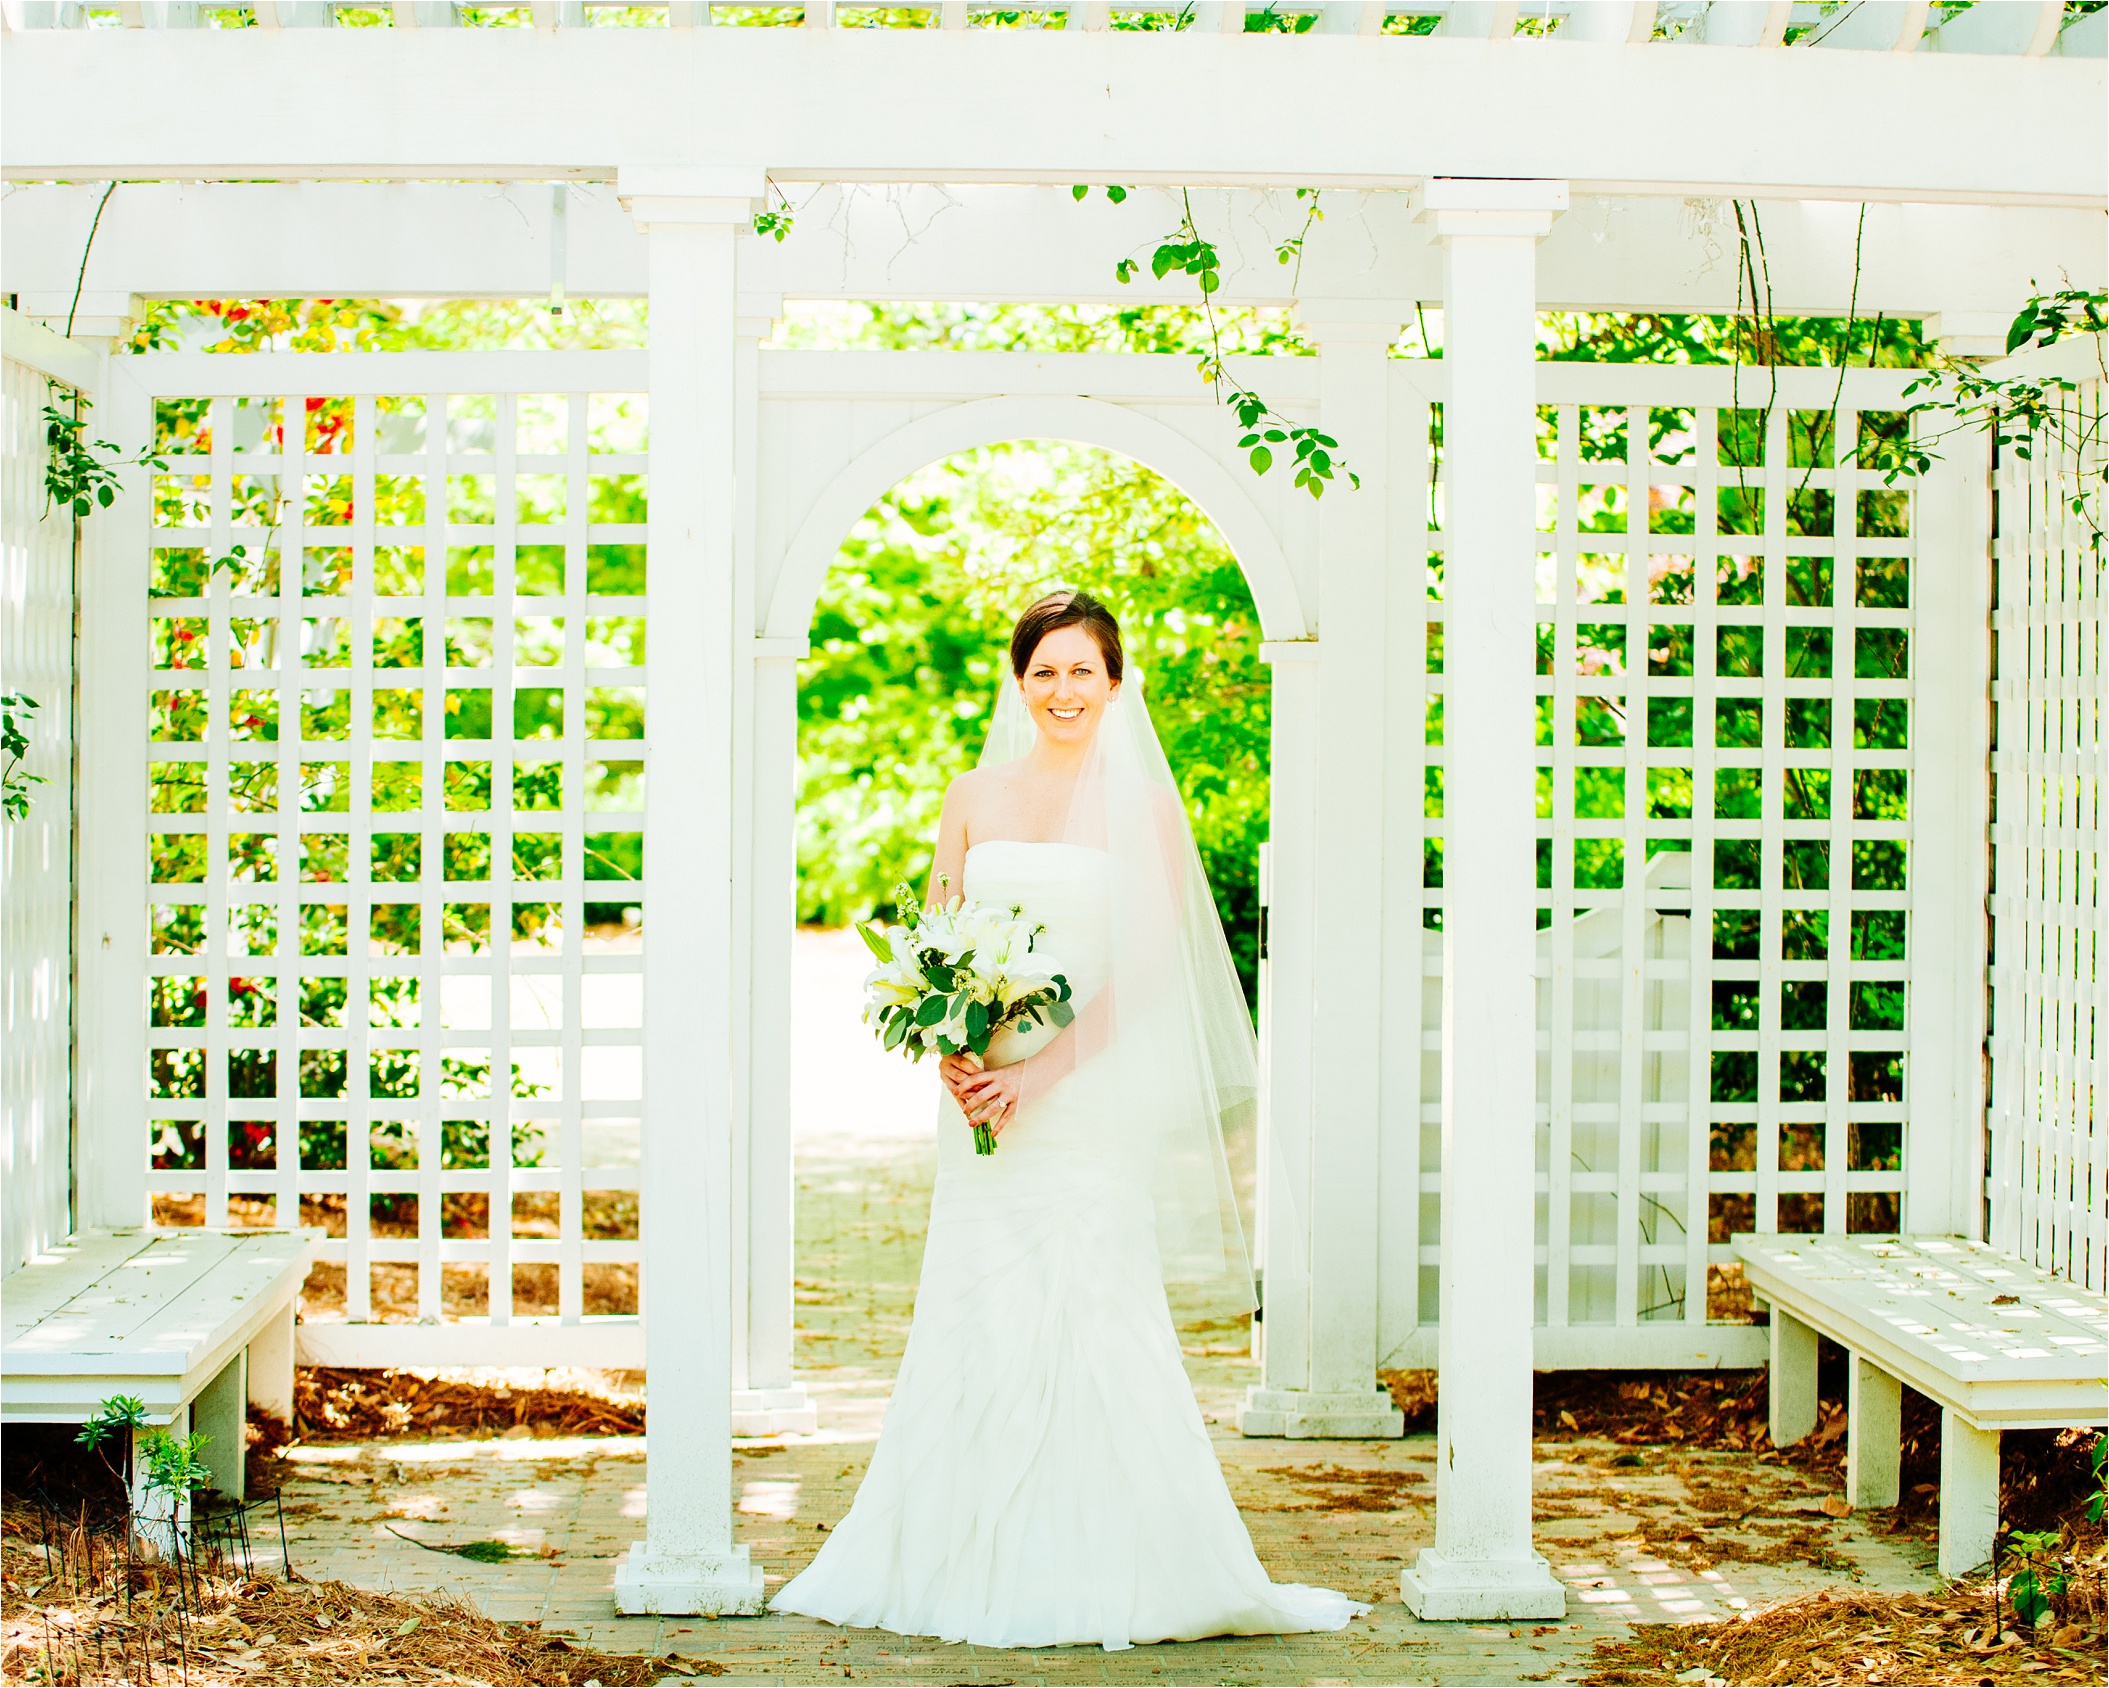 "South Carolina Bridal Shoot"